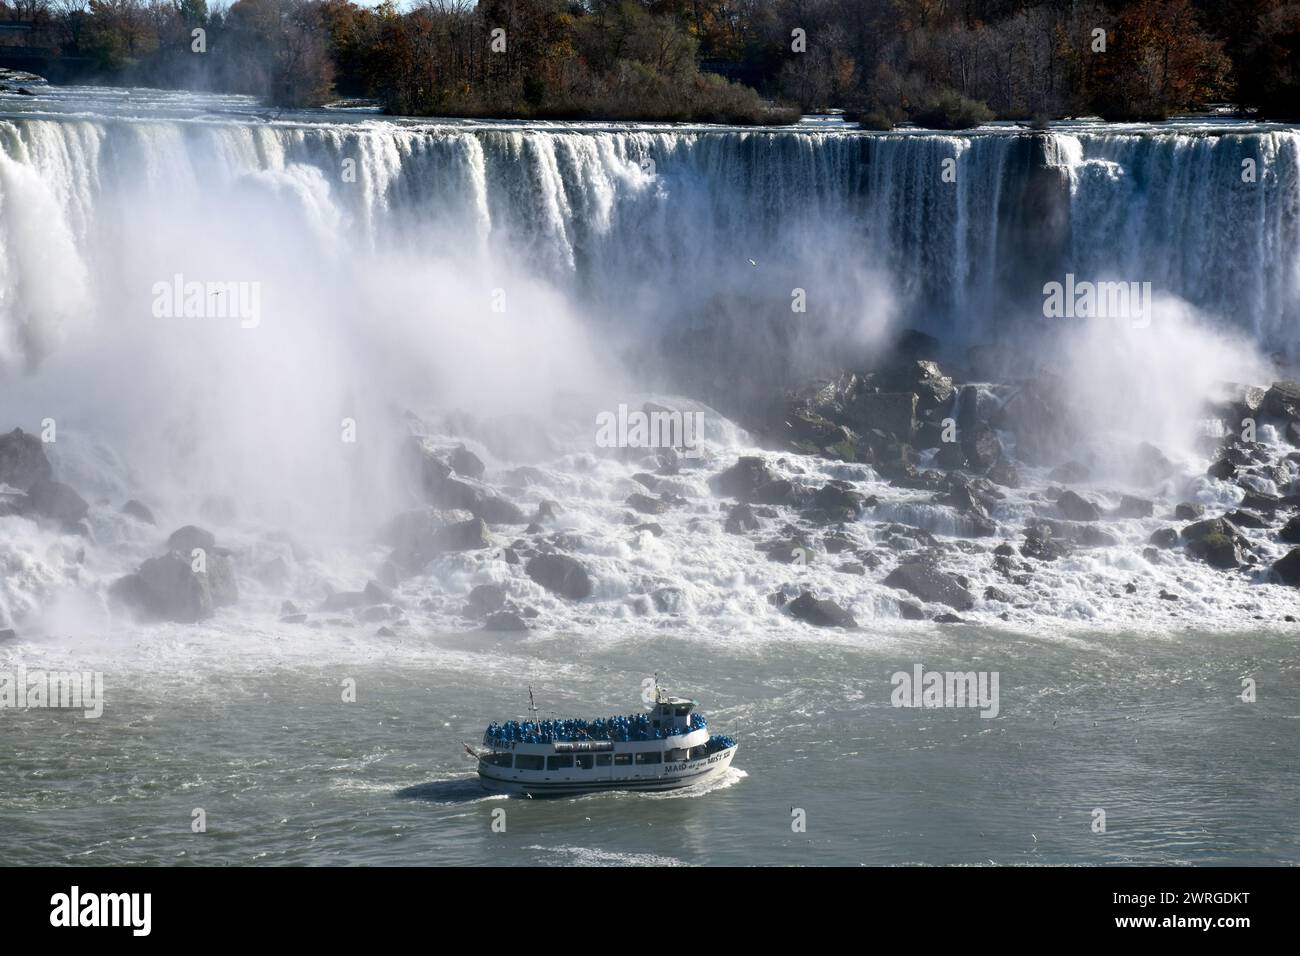 2 novembre 2015 - Niagara Falls, New York, États-Unis : vue des chutes américaines et de l'emblématique Maid of the Mist, photographiée du côté canadien. Banque D'Images